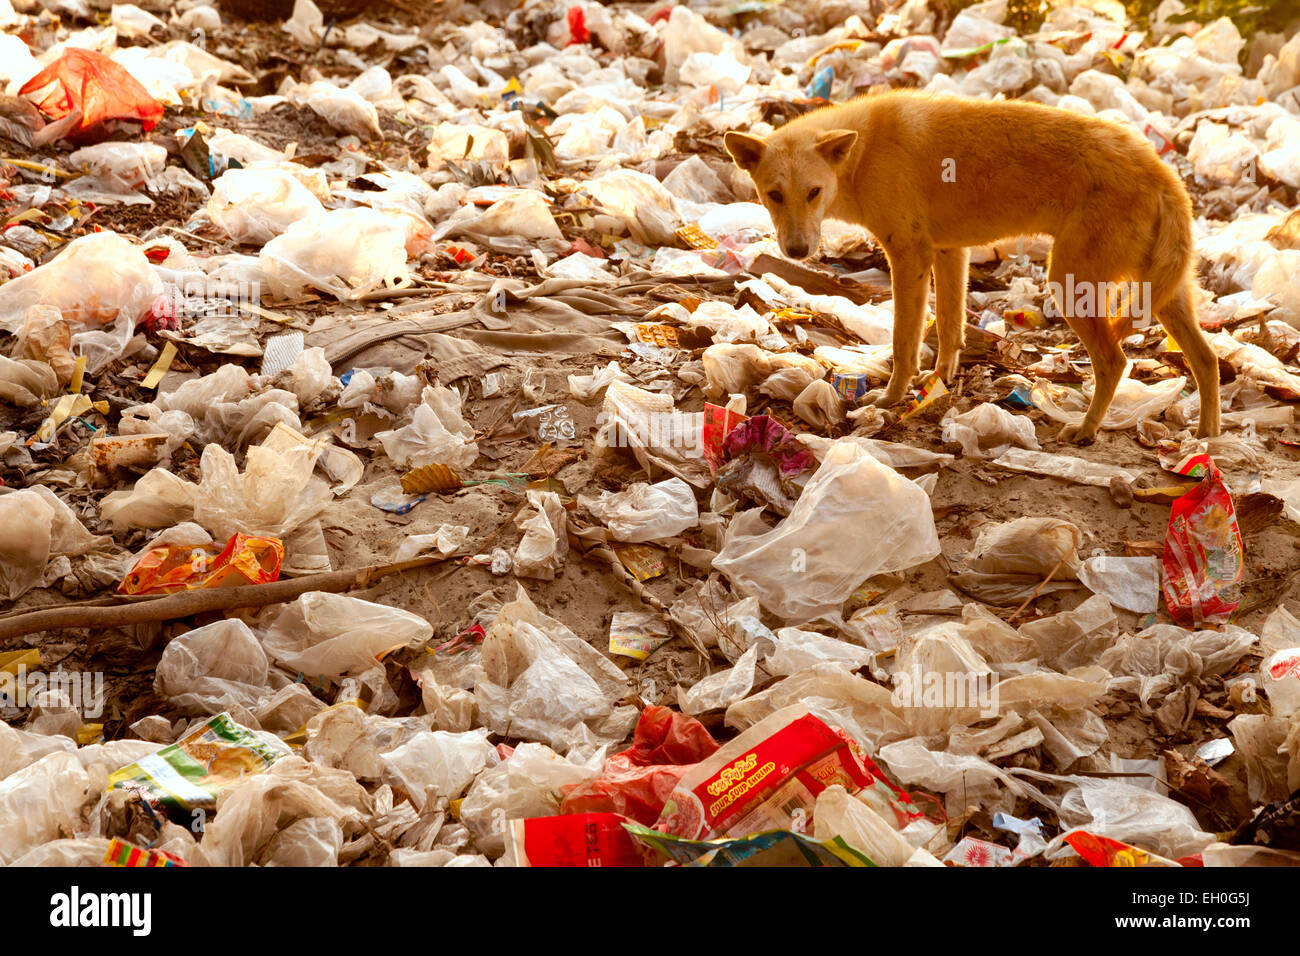 Asia inquinamento - un cane che foraging su un mucchio di rifiuti - esempio di grave inquinamento; Mandalay, Myanmar (Birmania), Asia Foto Stock